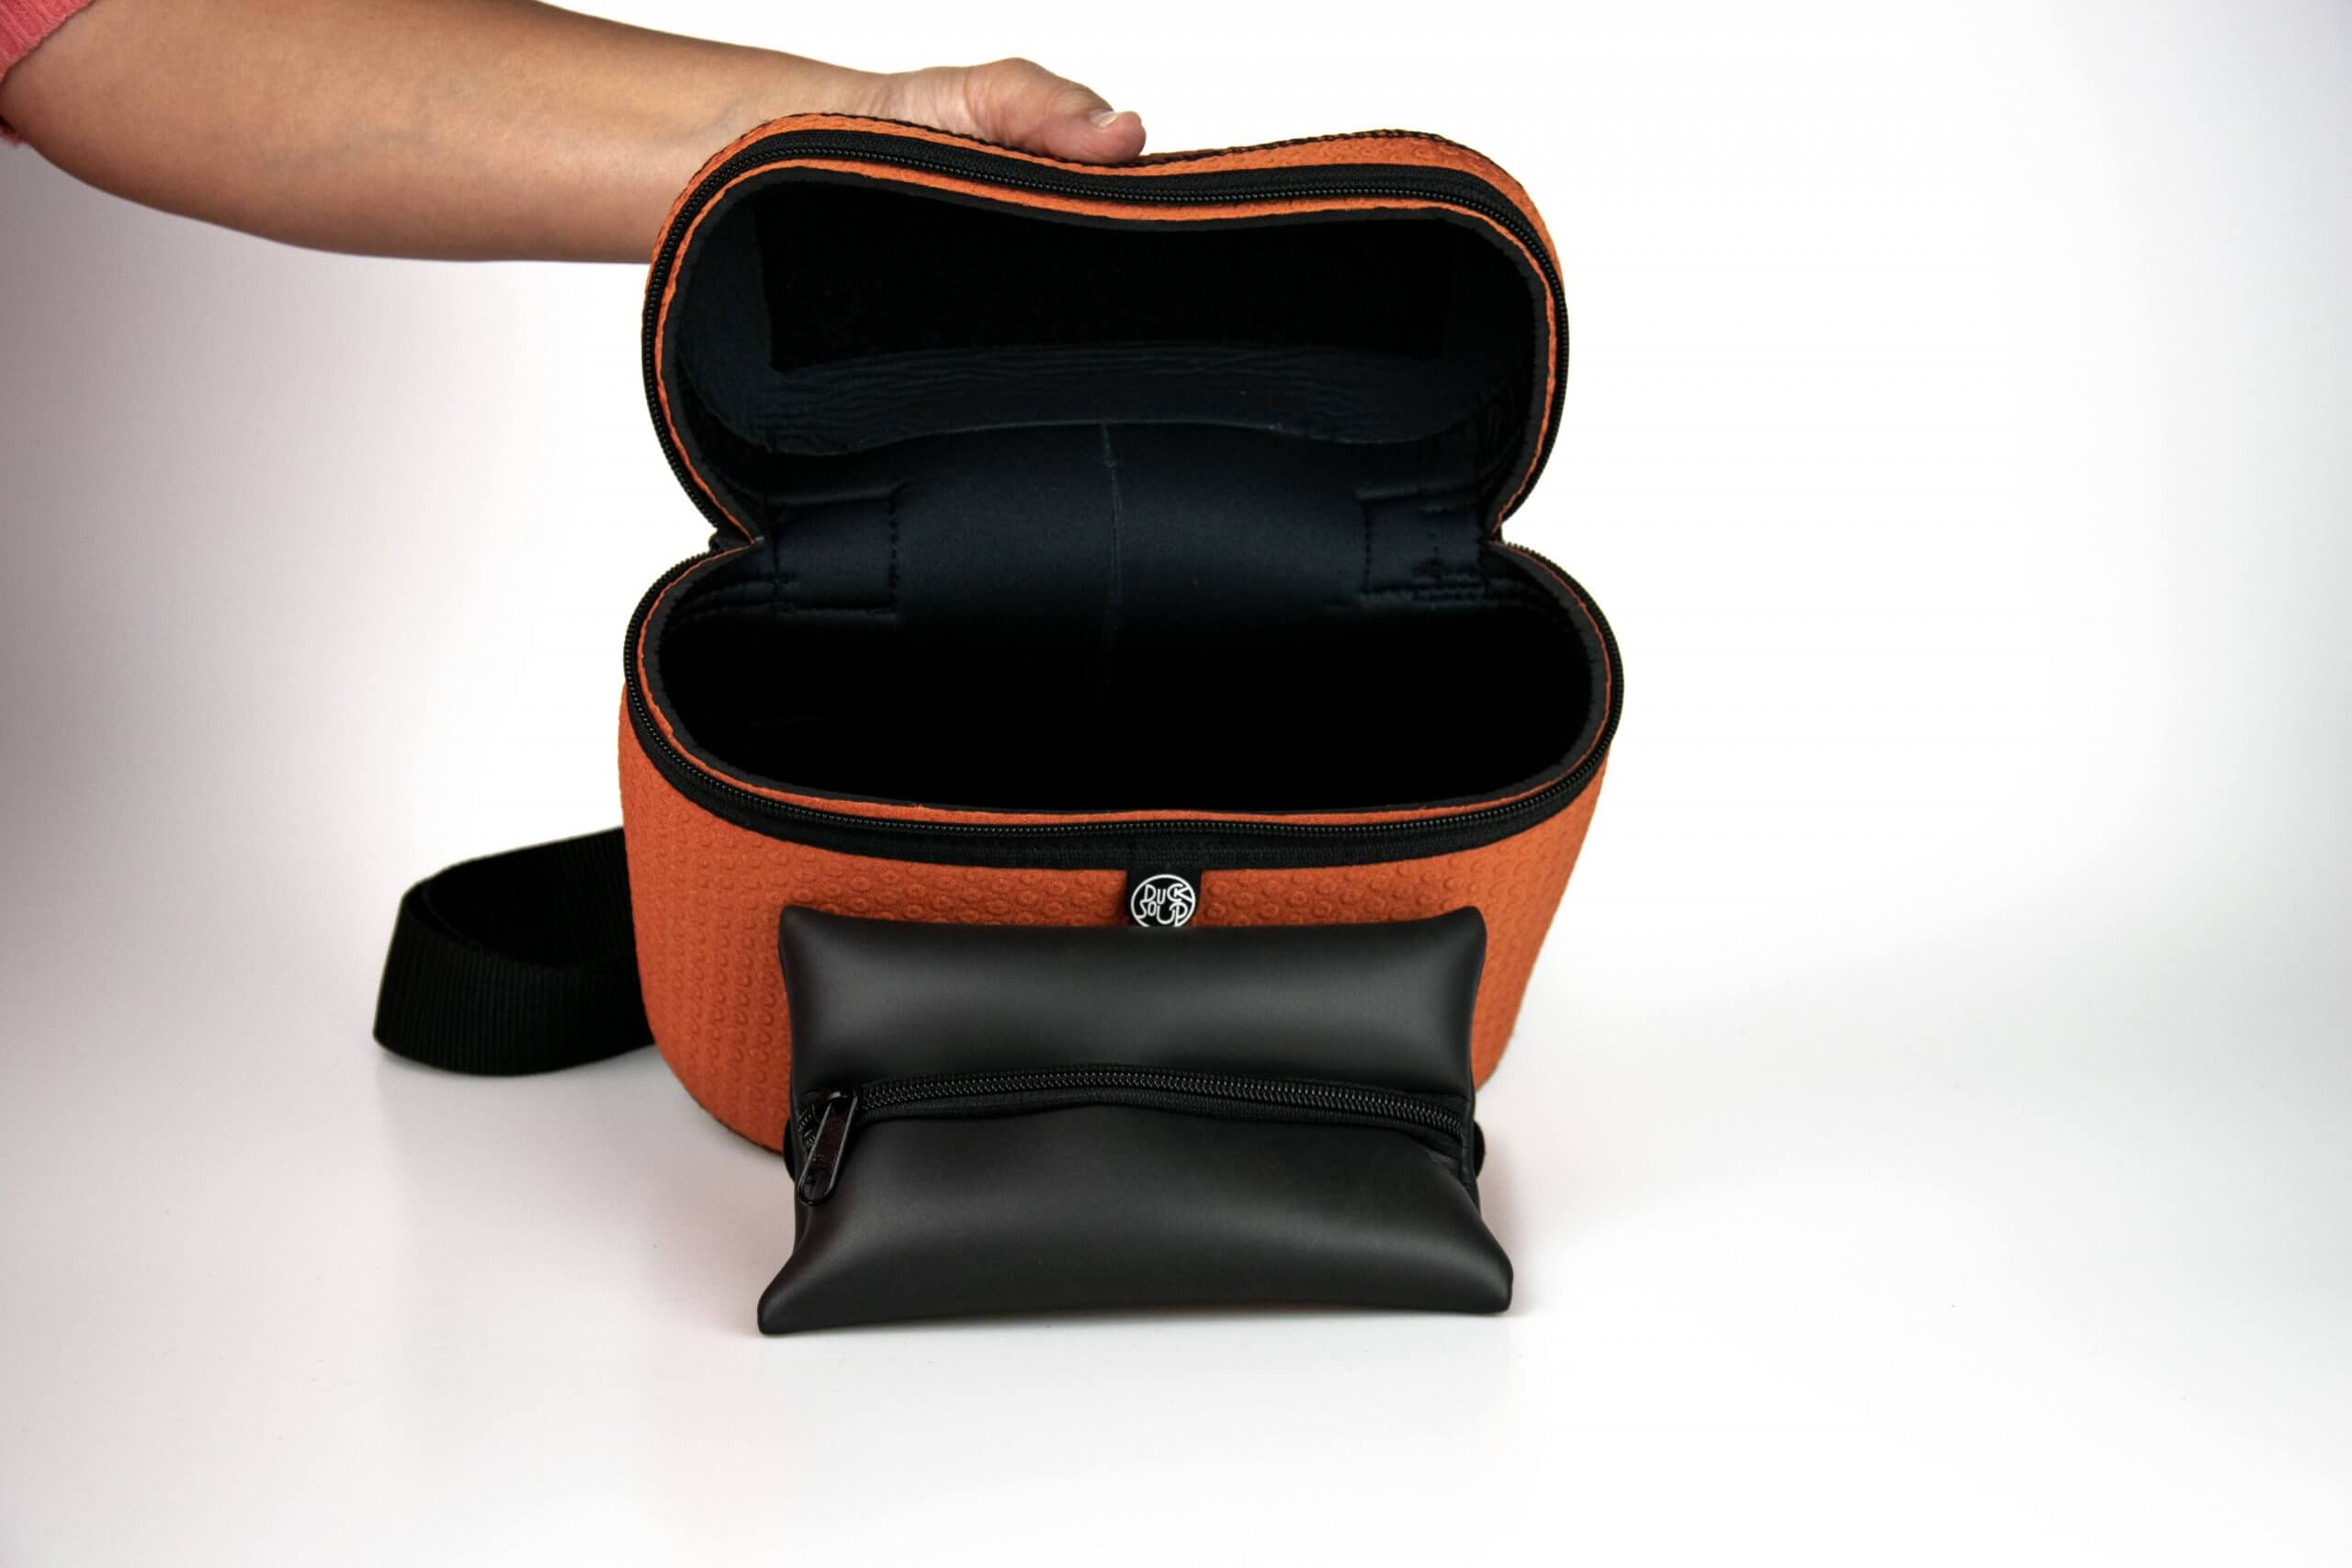 Hugo Orange Dot Bag shown open with interior pocket removed